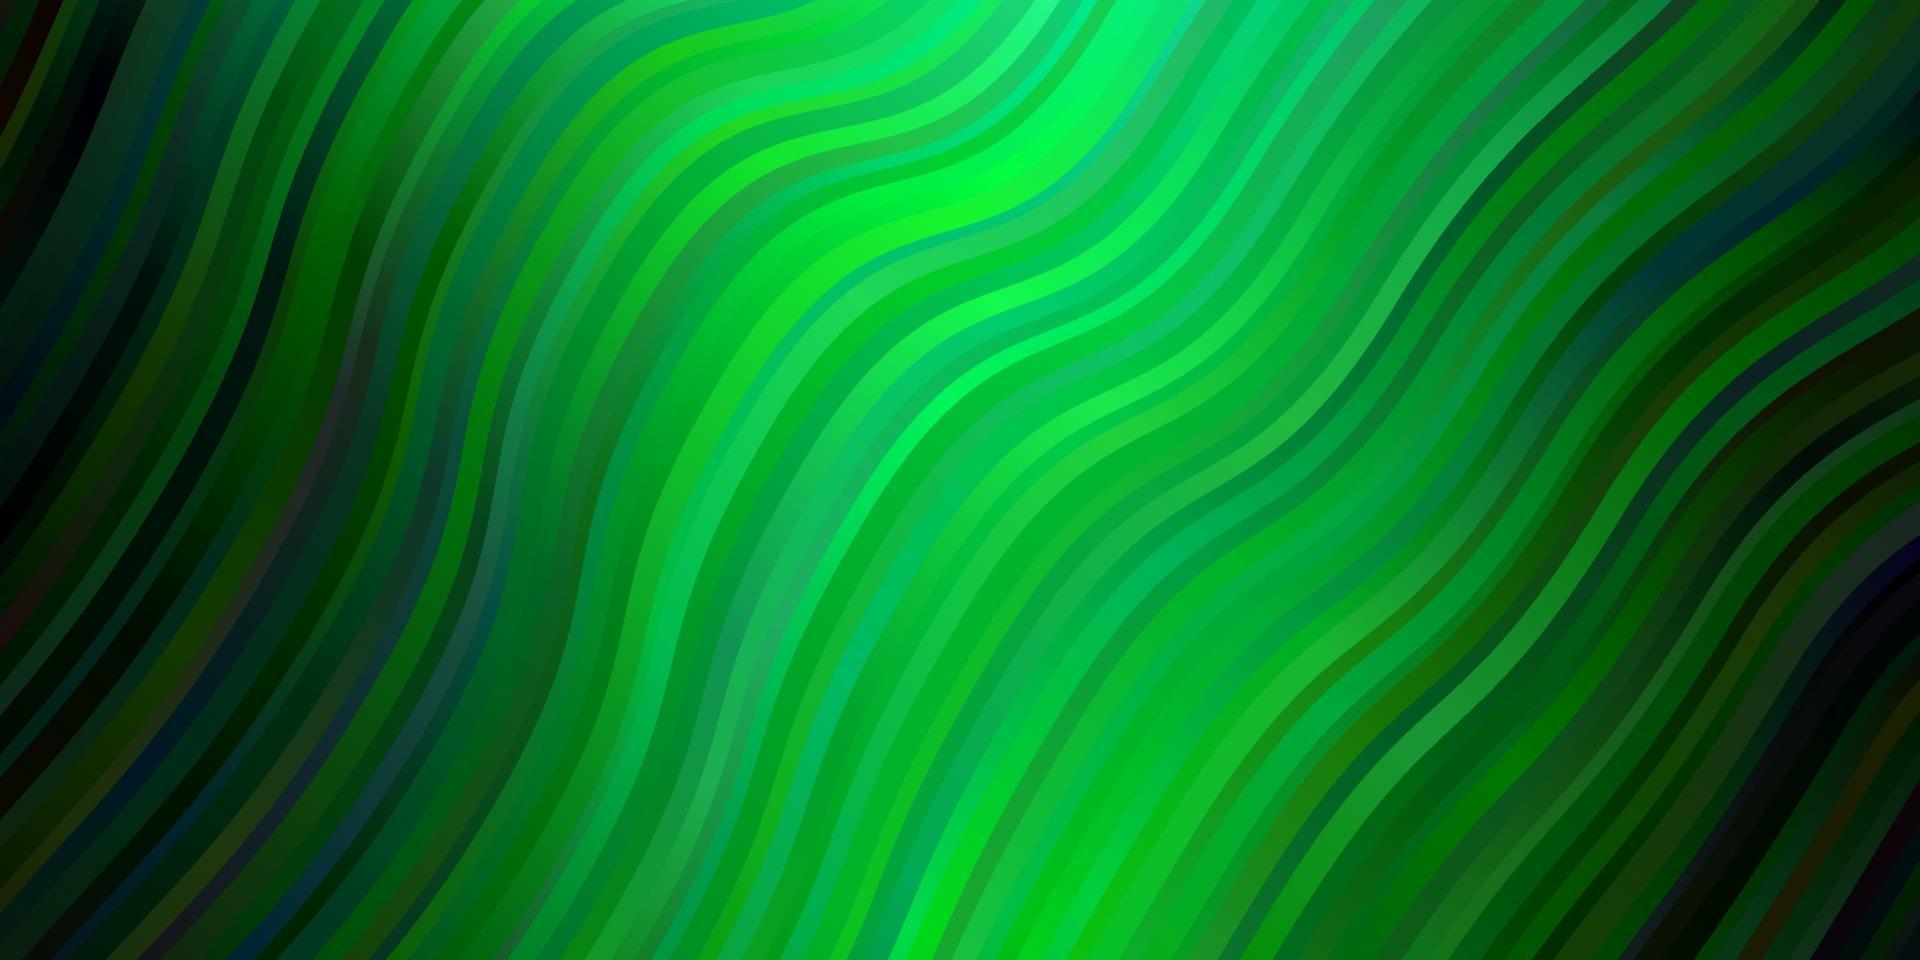 lichtblauw, groen vector sjabloon met wrange lijnen.